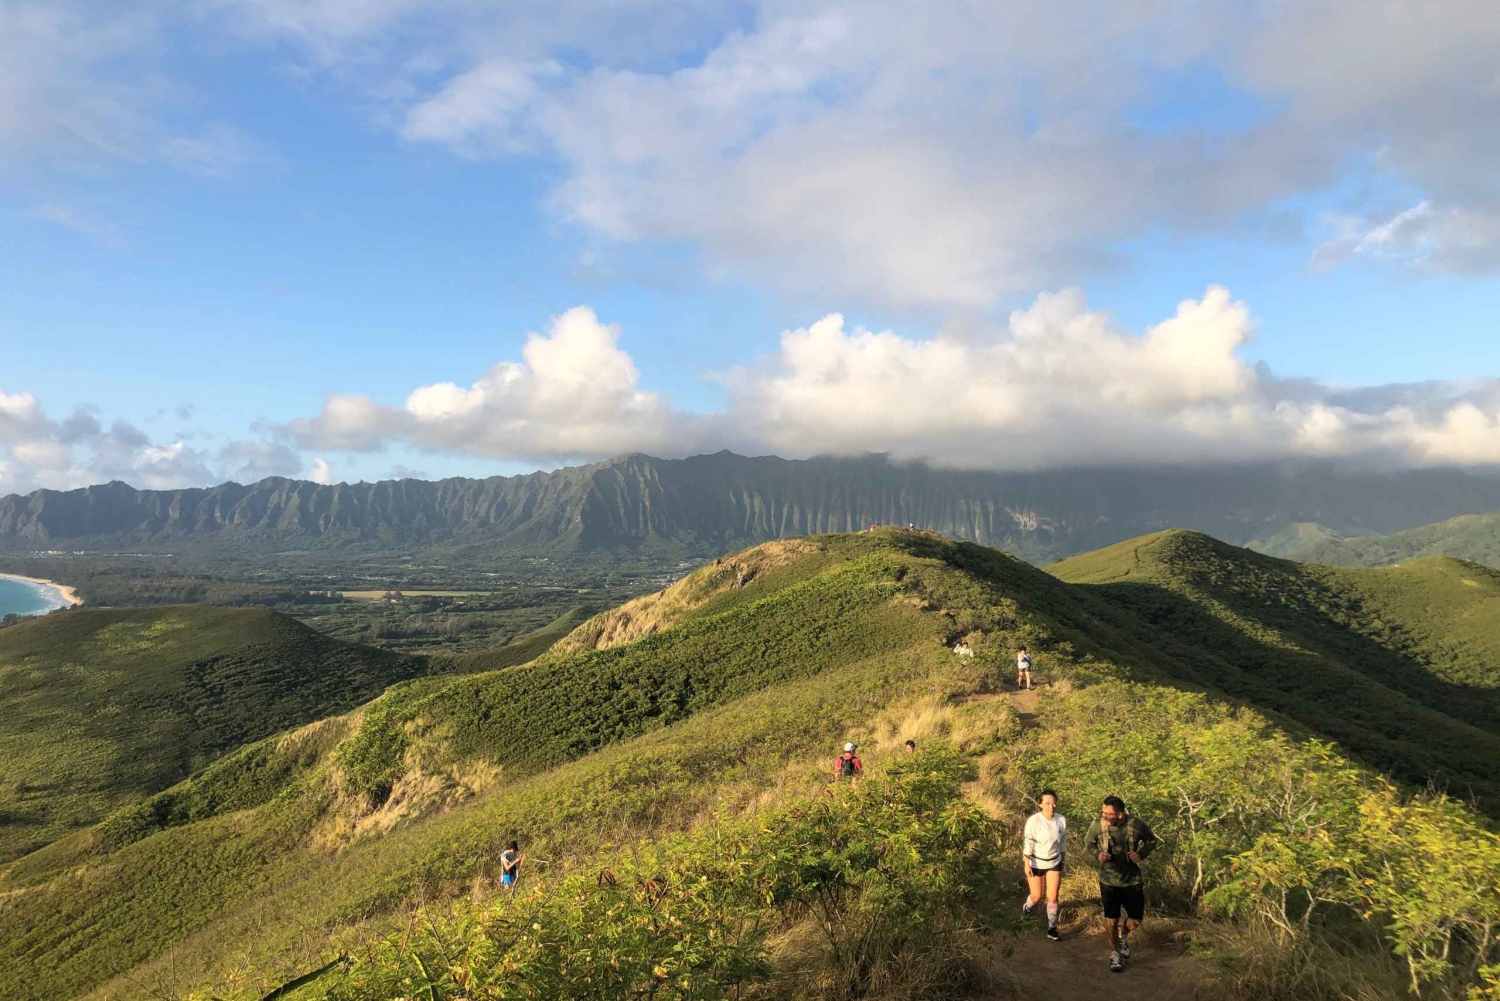 Oahu: Manoa Falls Hike and east side beach day